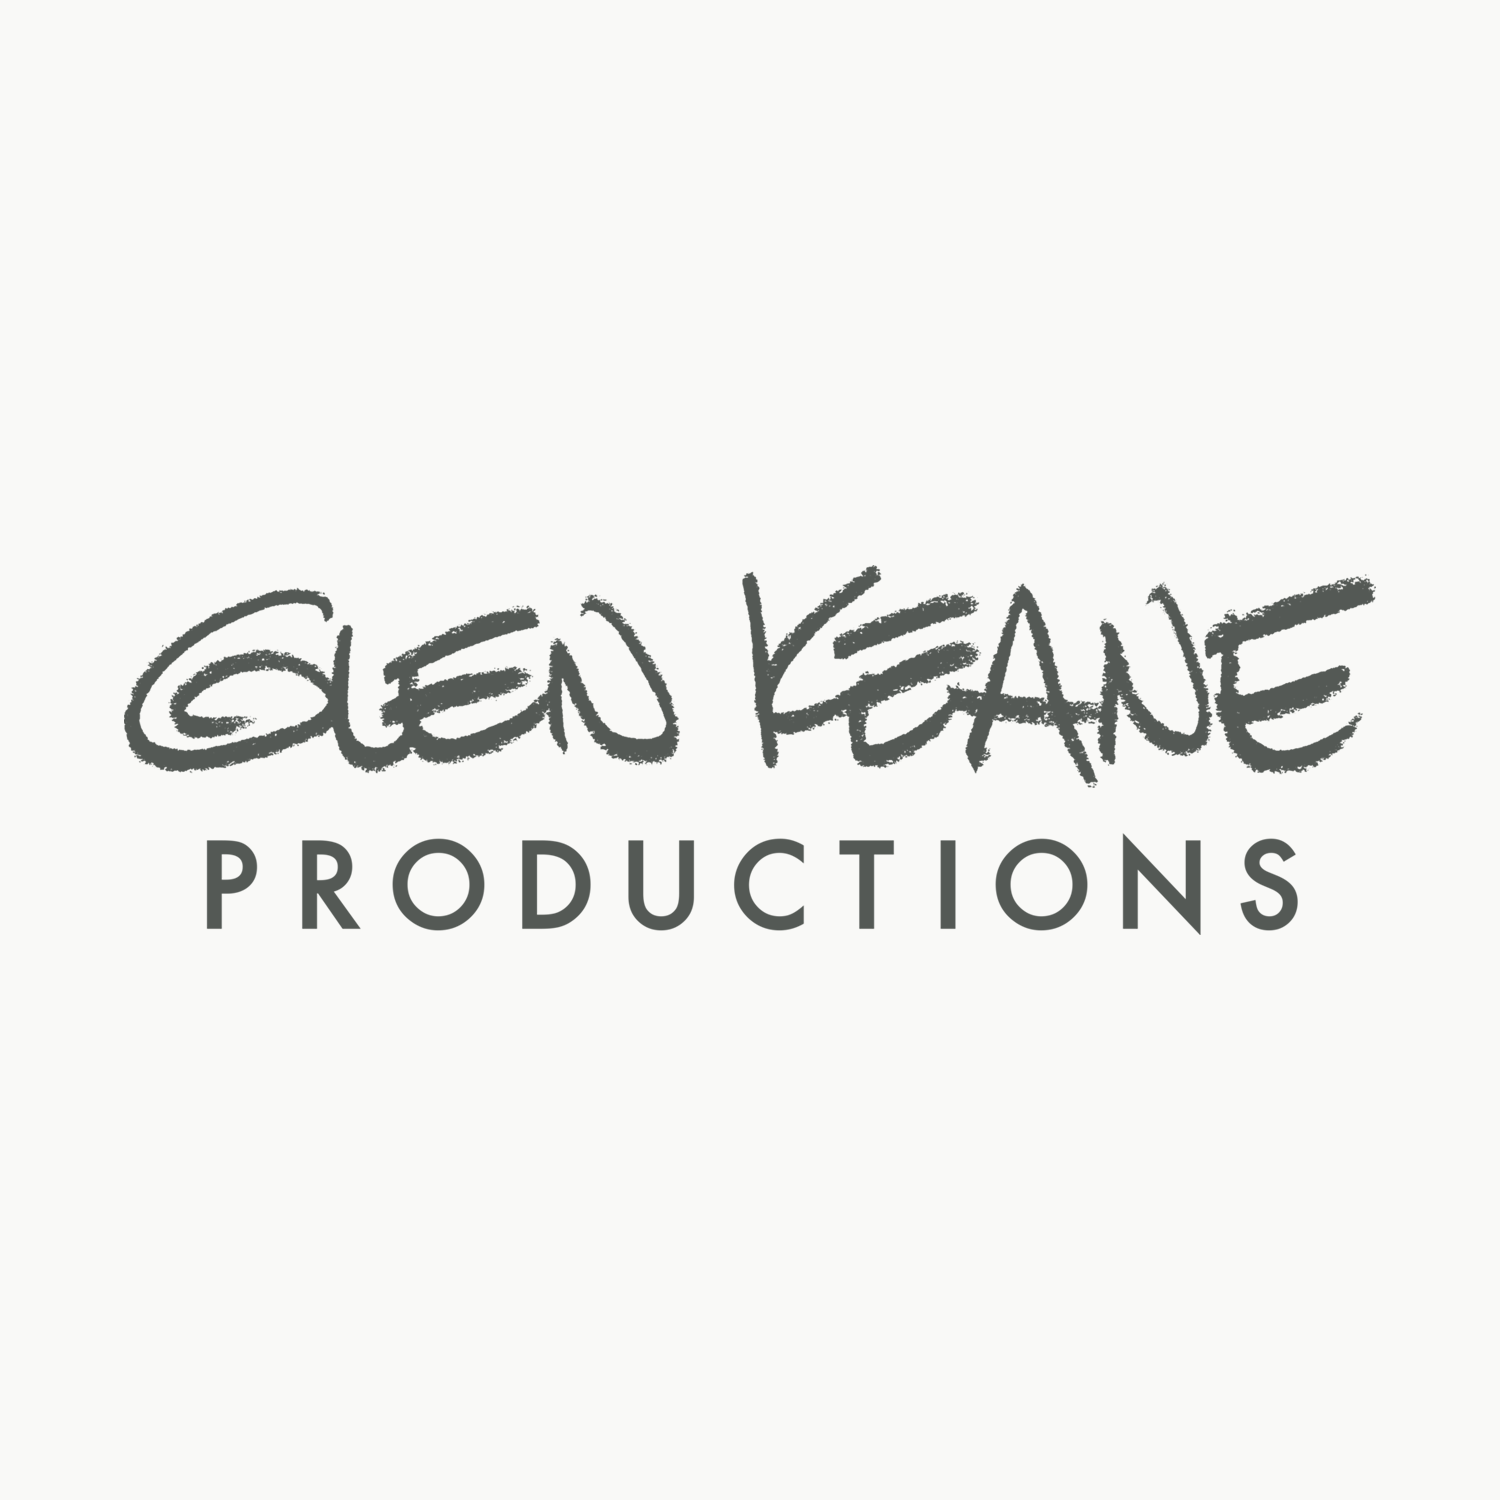 Glen Keane Productions